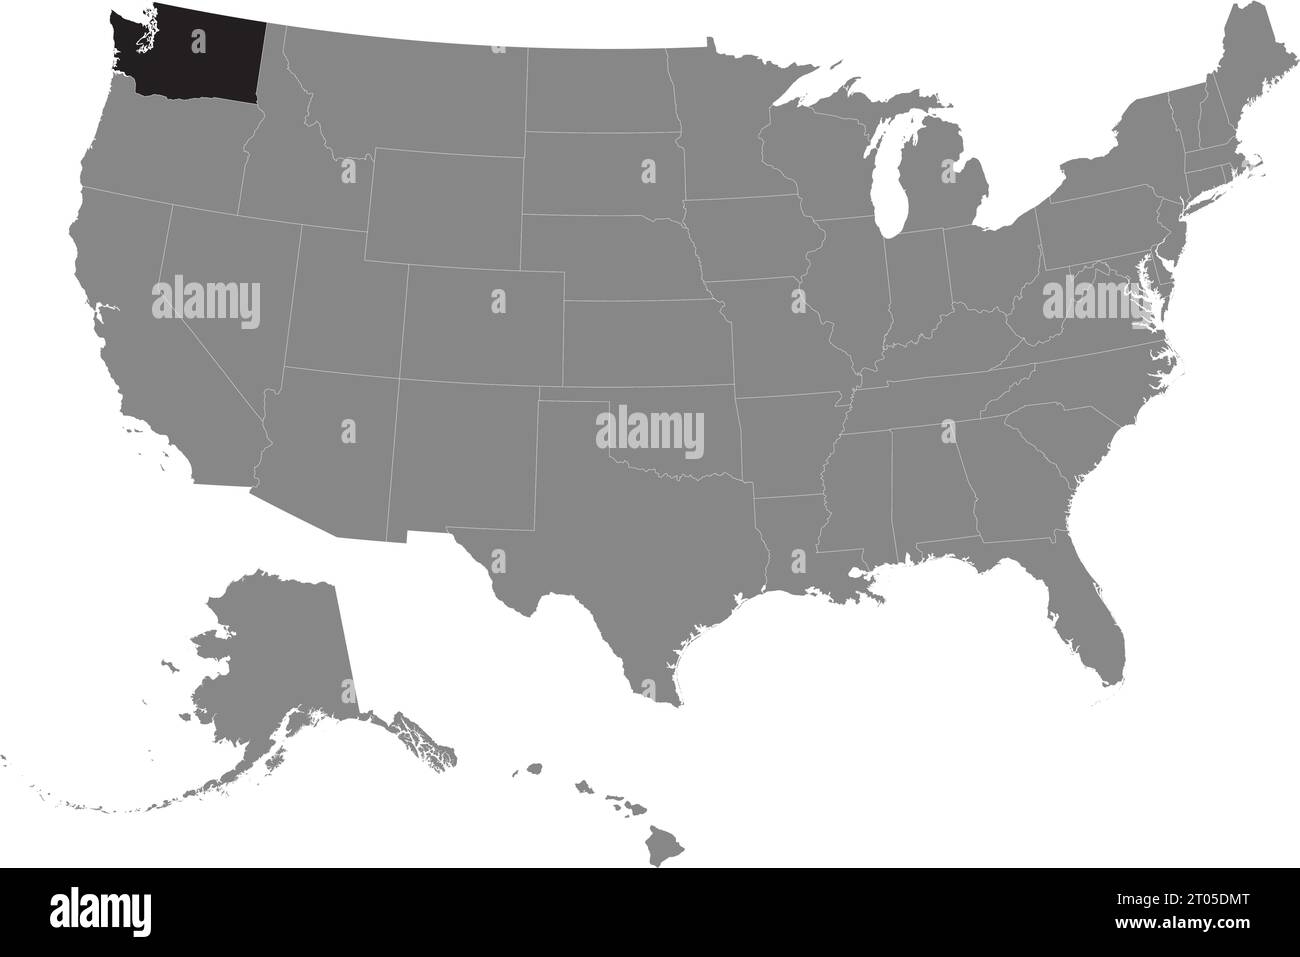 Carte fédérale CMJN noire de WASHINGTON à l'intérieur carte politique blanche et grise détaillée des États-Unis d'Amérique sur fond transparent Illustration de Vecteur